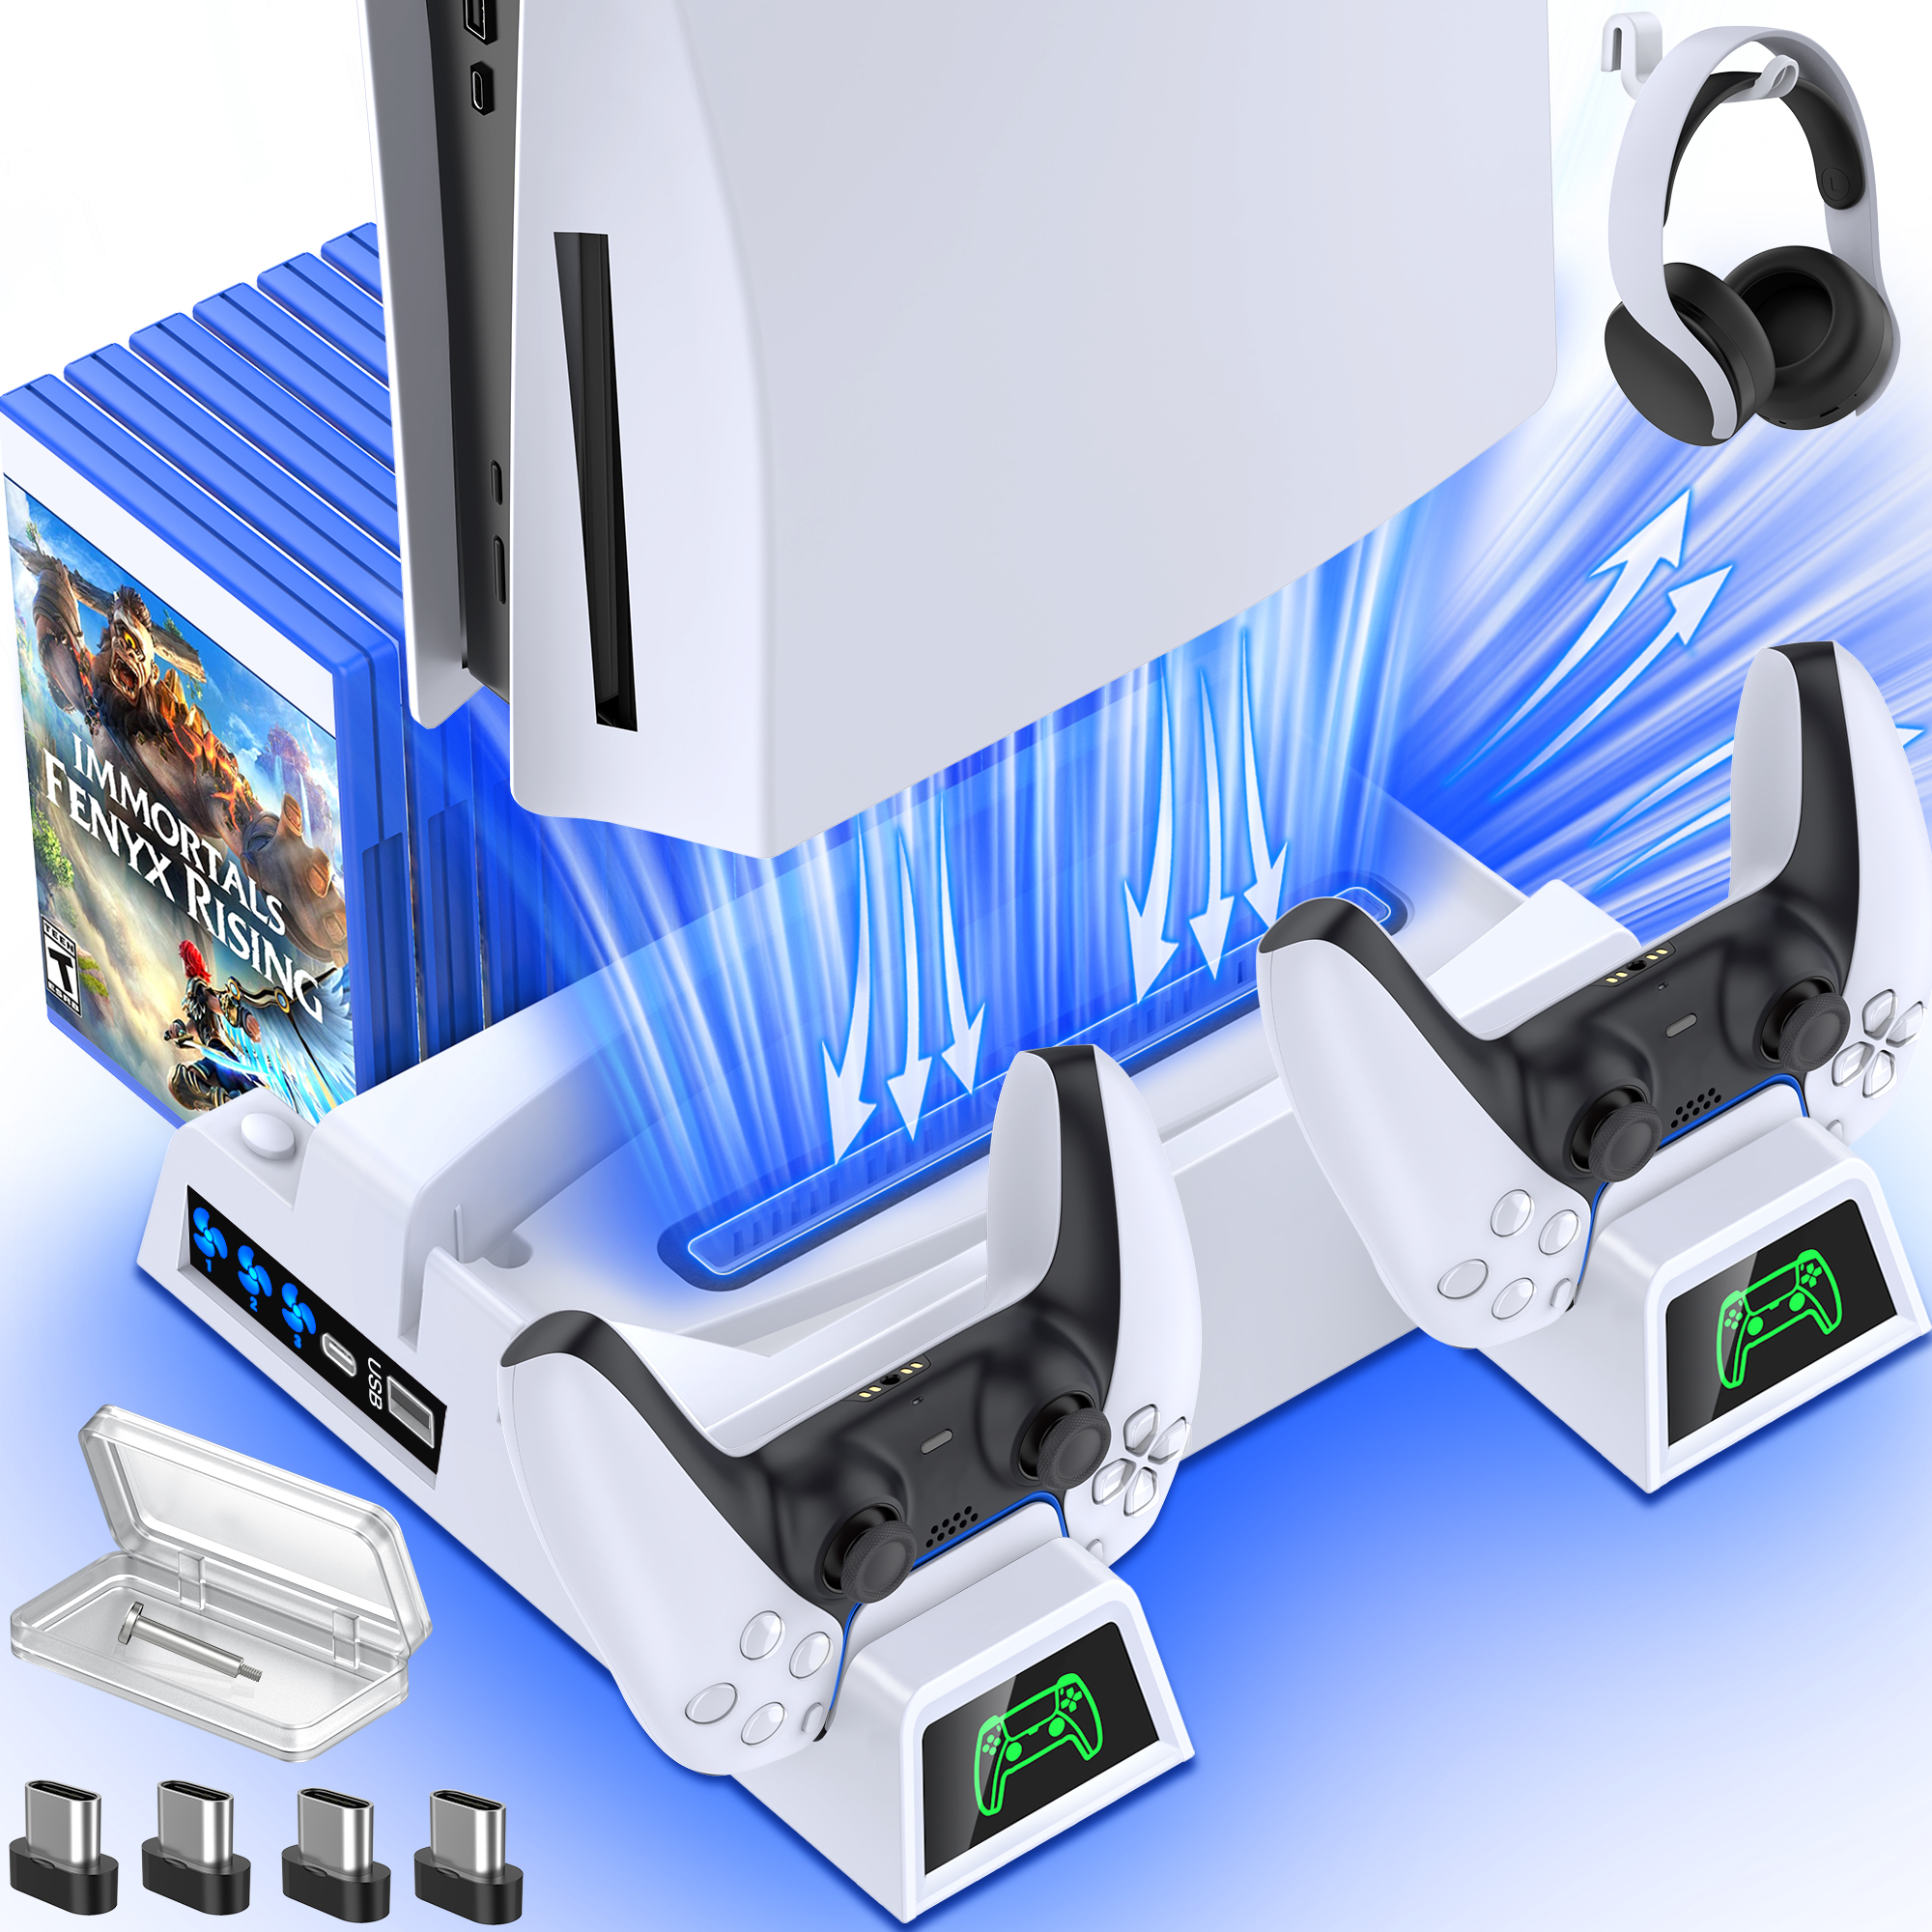 Suporte vertical para Playstation 5 com estação de carregamento por  ventilador de resfriamento para PS5 Digital Edition/Console Ultra HD, com